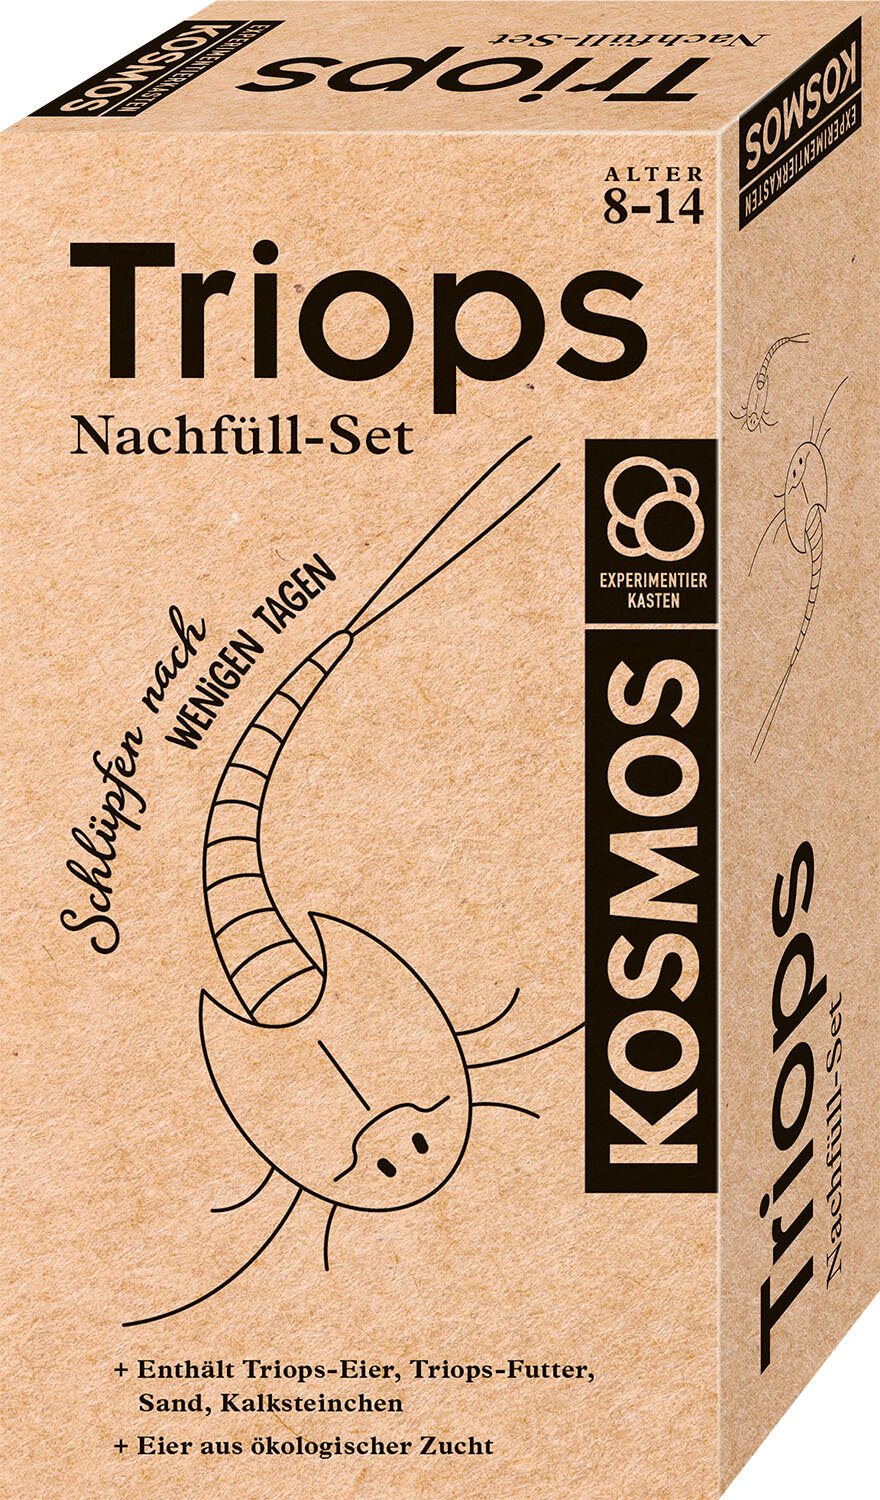 Triops Nachfüll-Set